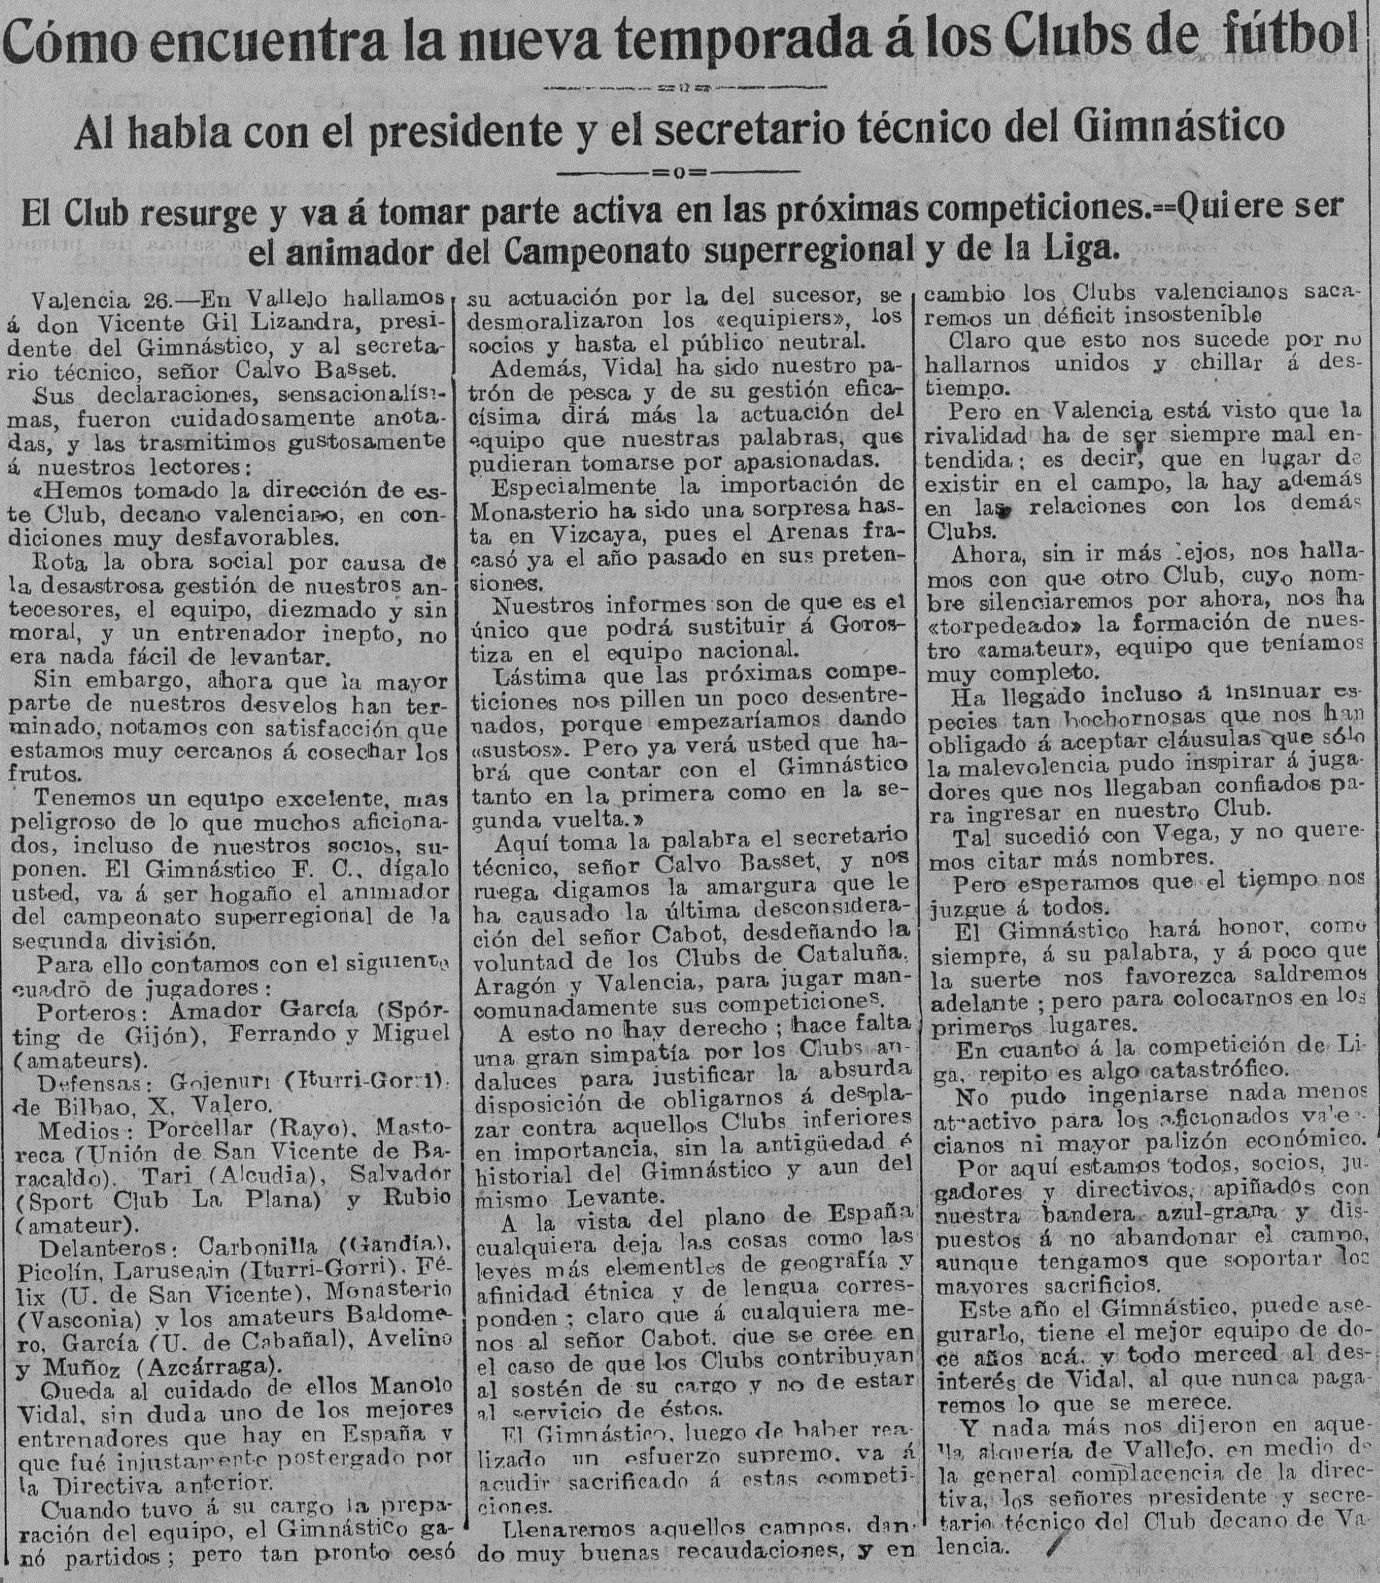 1935.08.27 (27 августа 1935), президент Гимнастико о команде.jpg